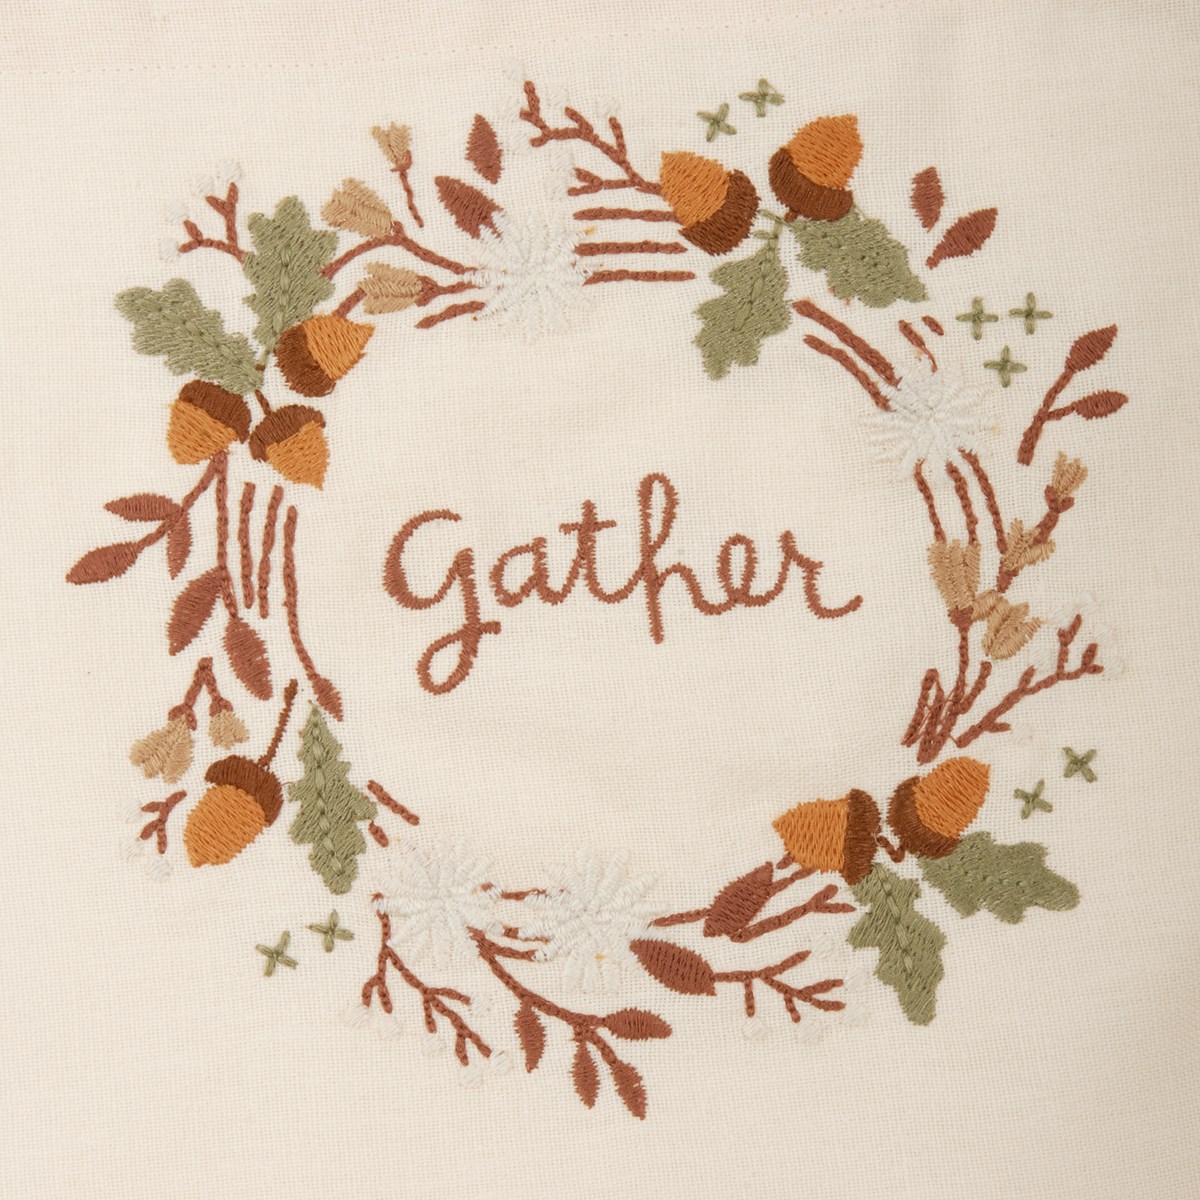 Apron - Gather - 27.50" x 28" - Cotton, Linen, Metal